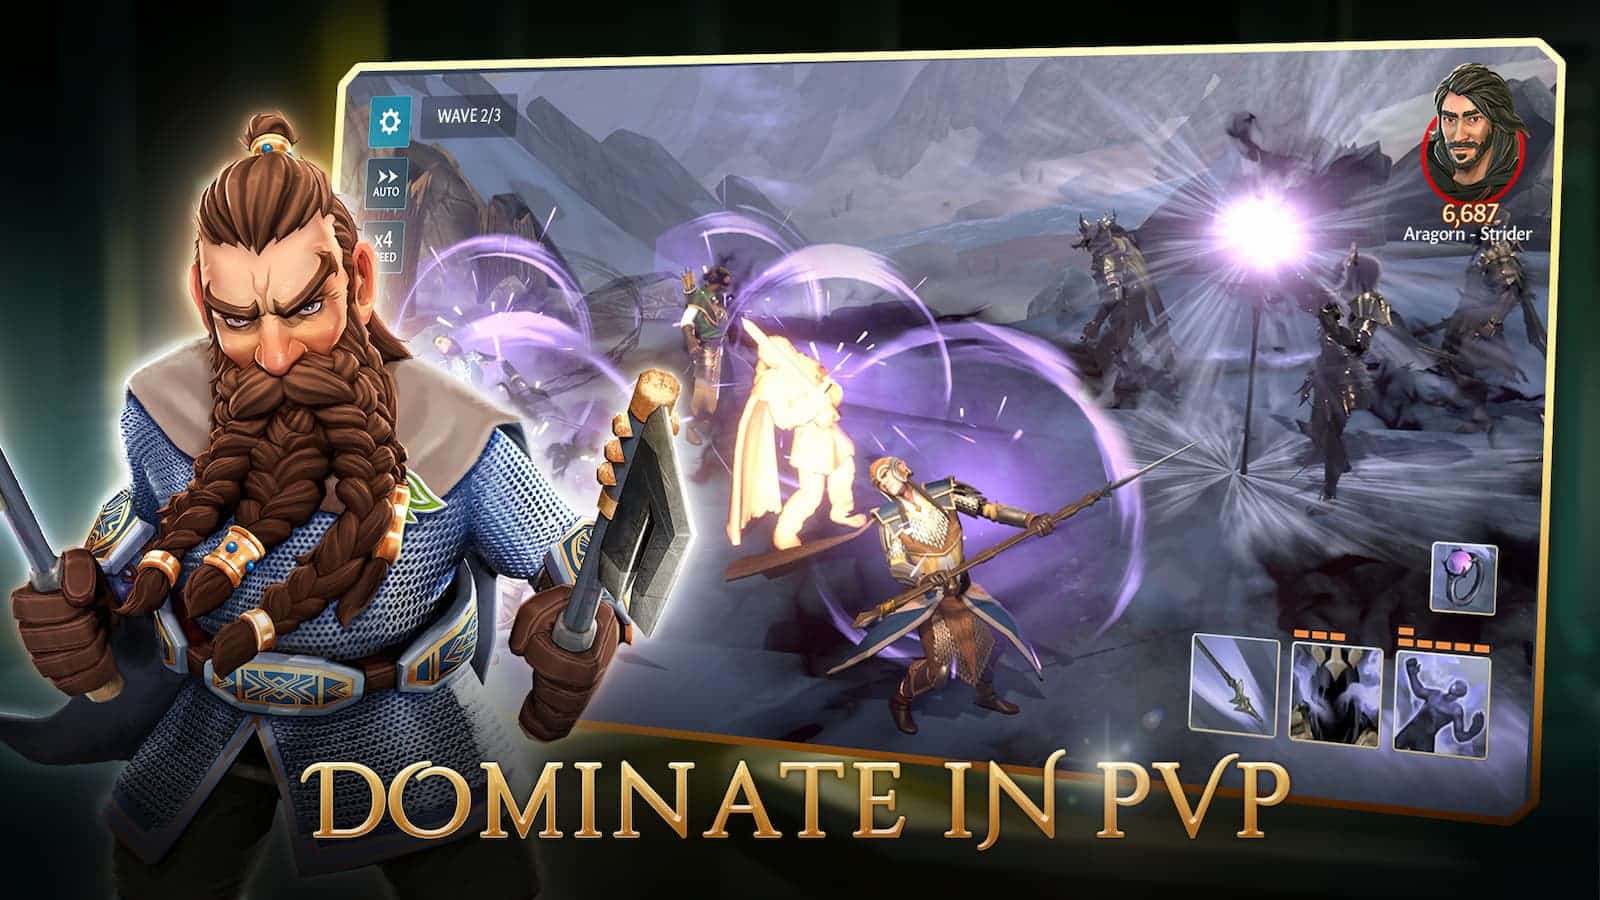 ผู้เล่นสี่คนกำลังแข่งขันกันในเกม Player vs Player (PvP) โดยหนึ่งในนั้น Aragorn-Strider เป็นผู้ครองการแข่งขัน ข้อความเต็ม: WAVE 2/3 AUTO 6,687. ×4 Aragorn - Strider DEED ครอบครองใน PVP